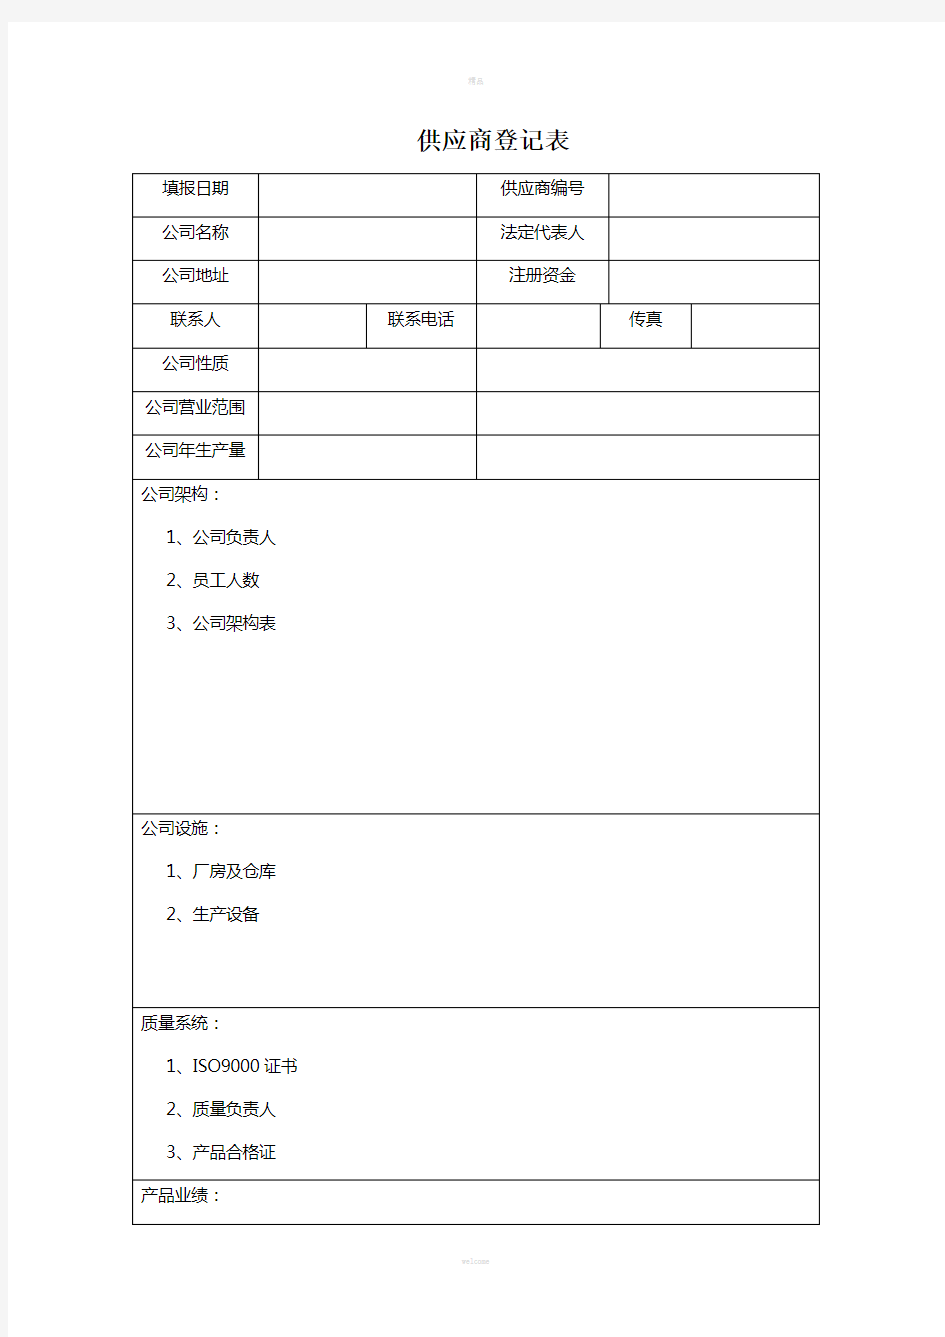 供应商登记表(1)